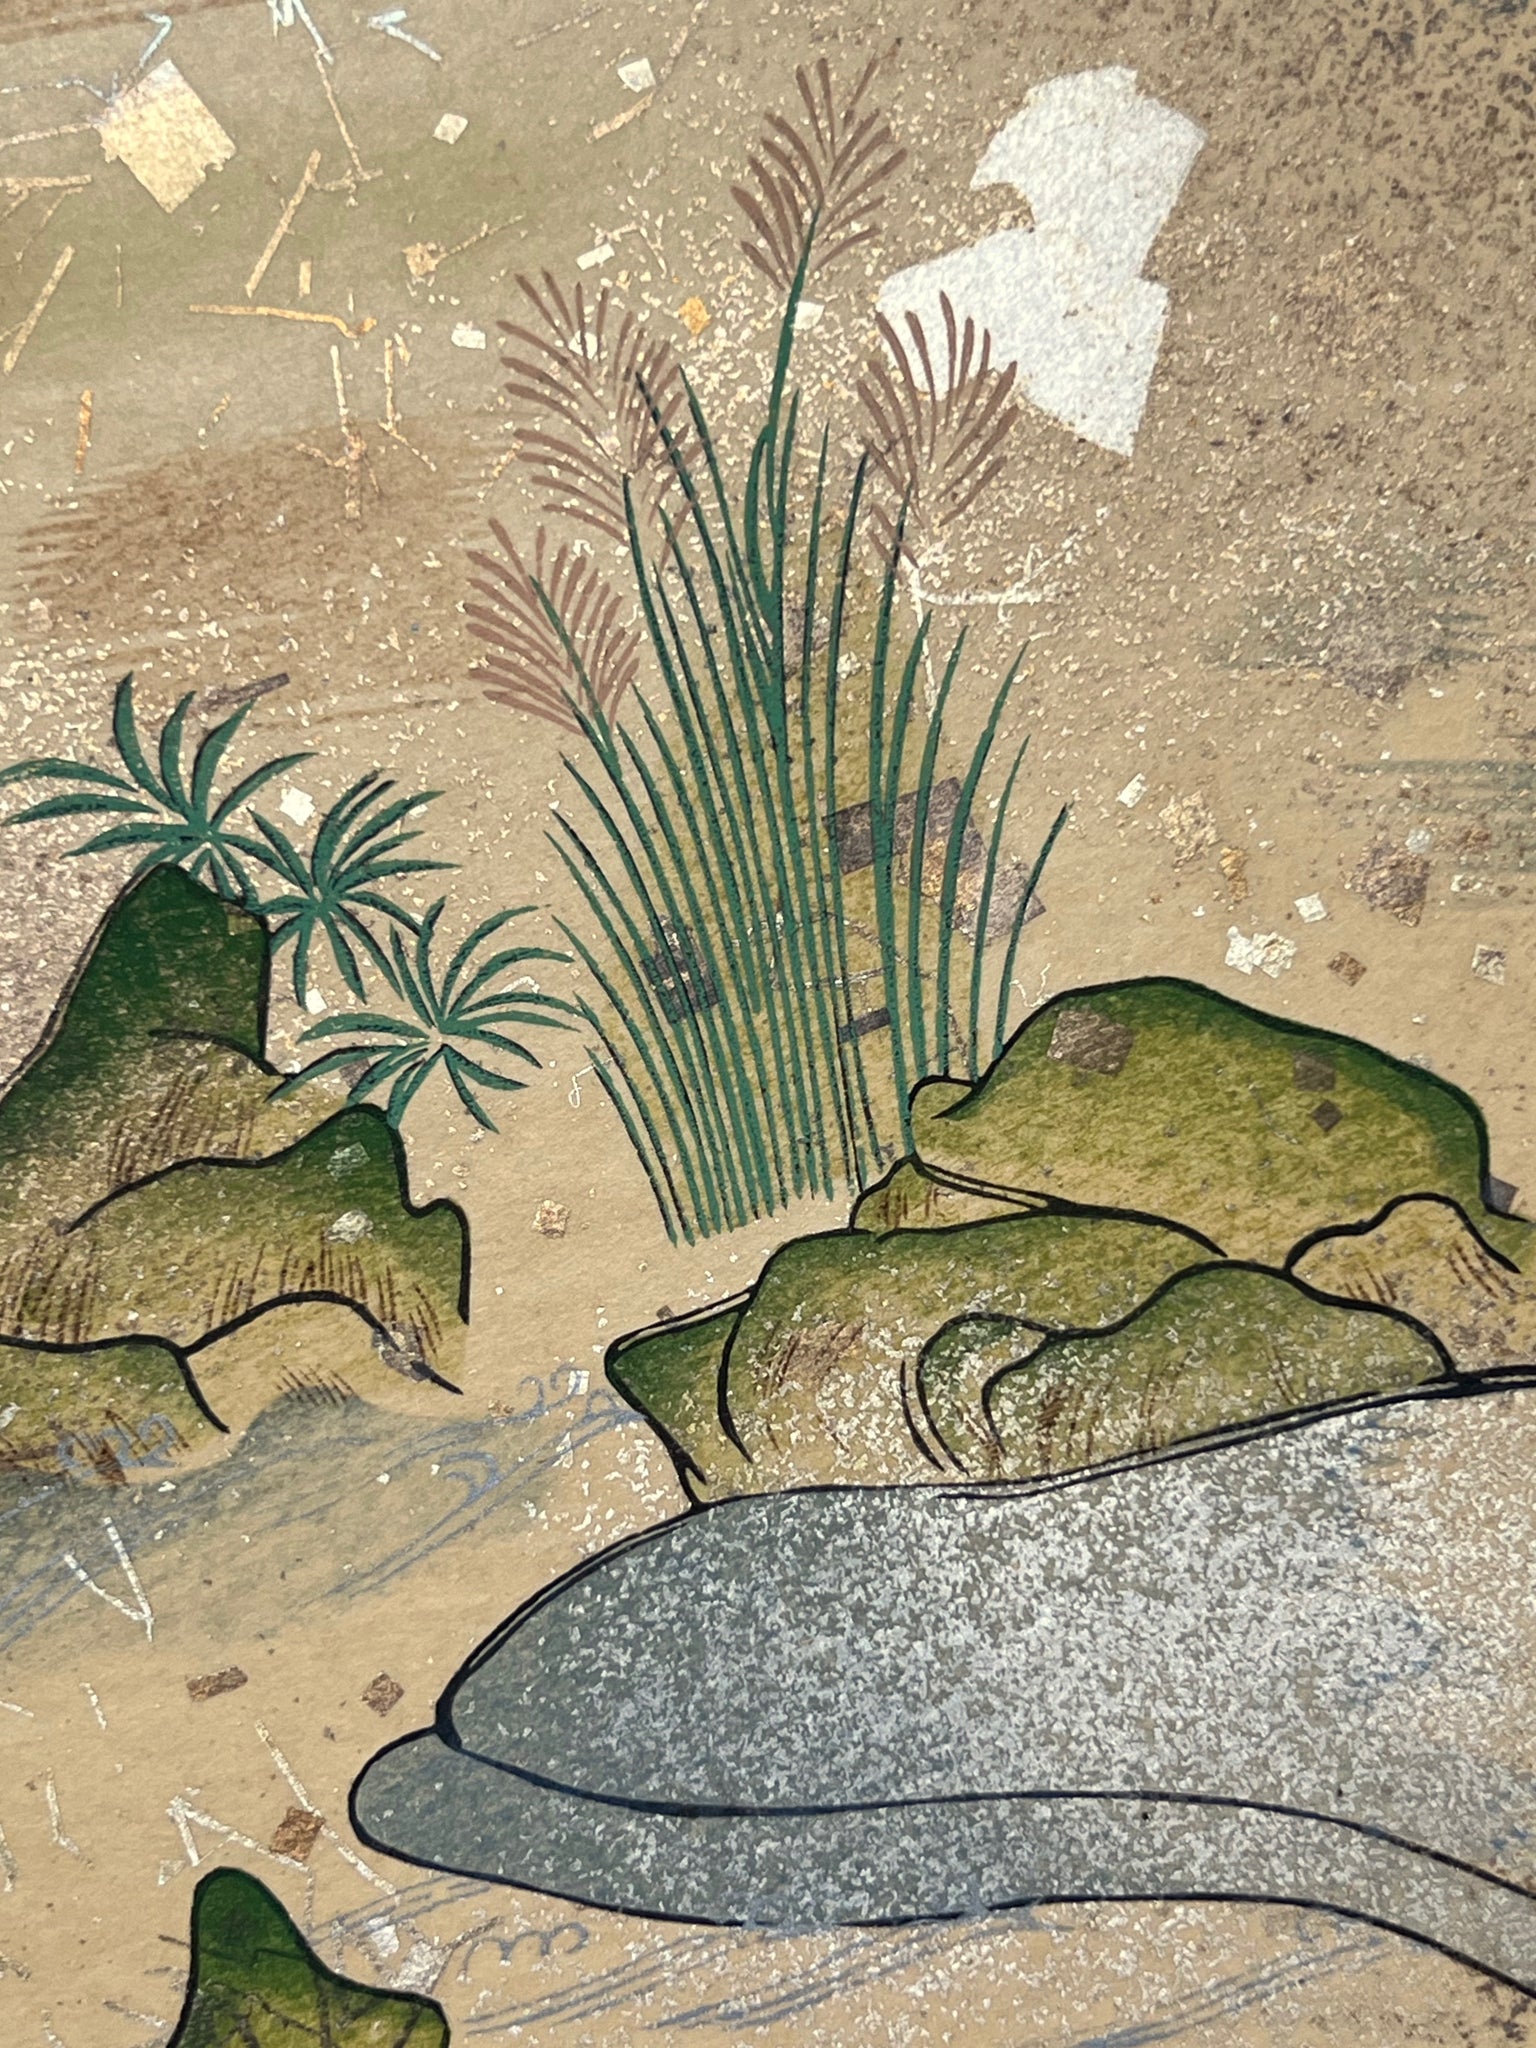 Estampe japonaise en forme d'éventail parsemée de fragments d'or et d'argent, gros plan sur les joncs épars au bord de la rivière, herbes et rochers, fragments scintillants.